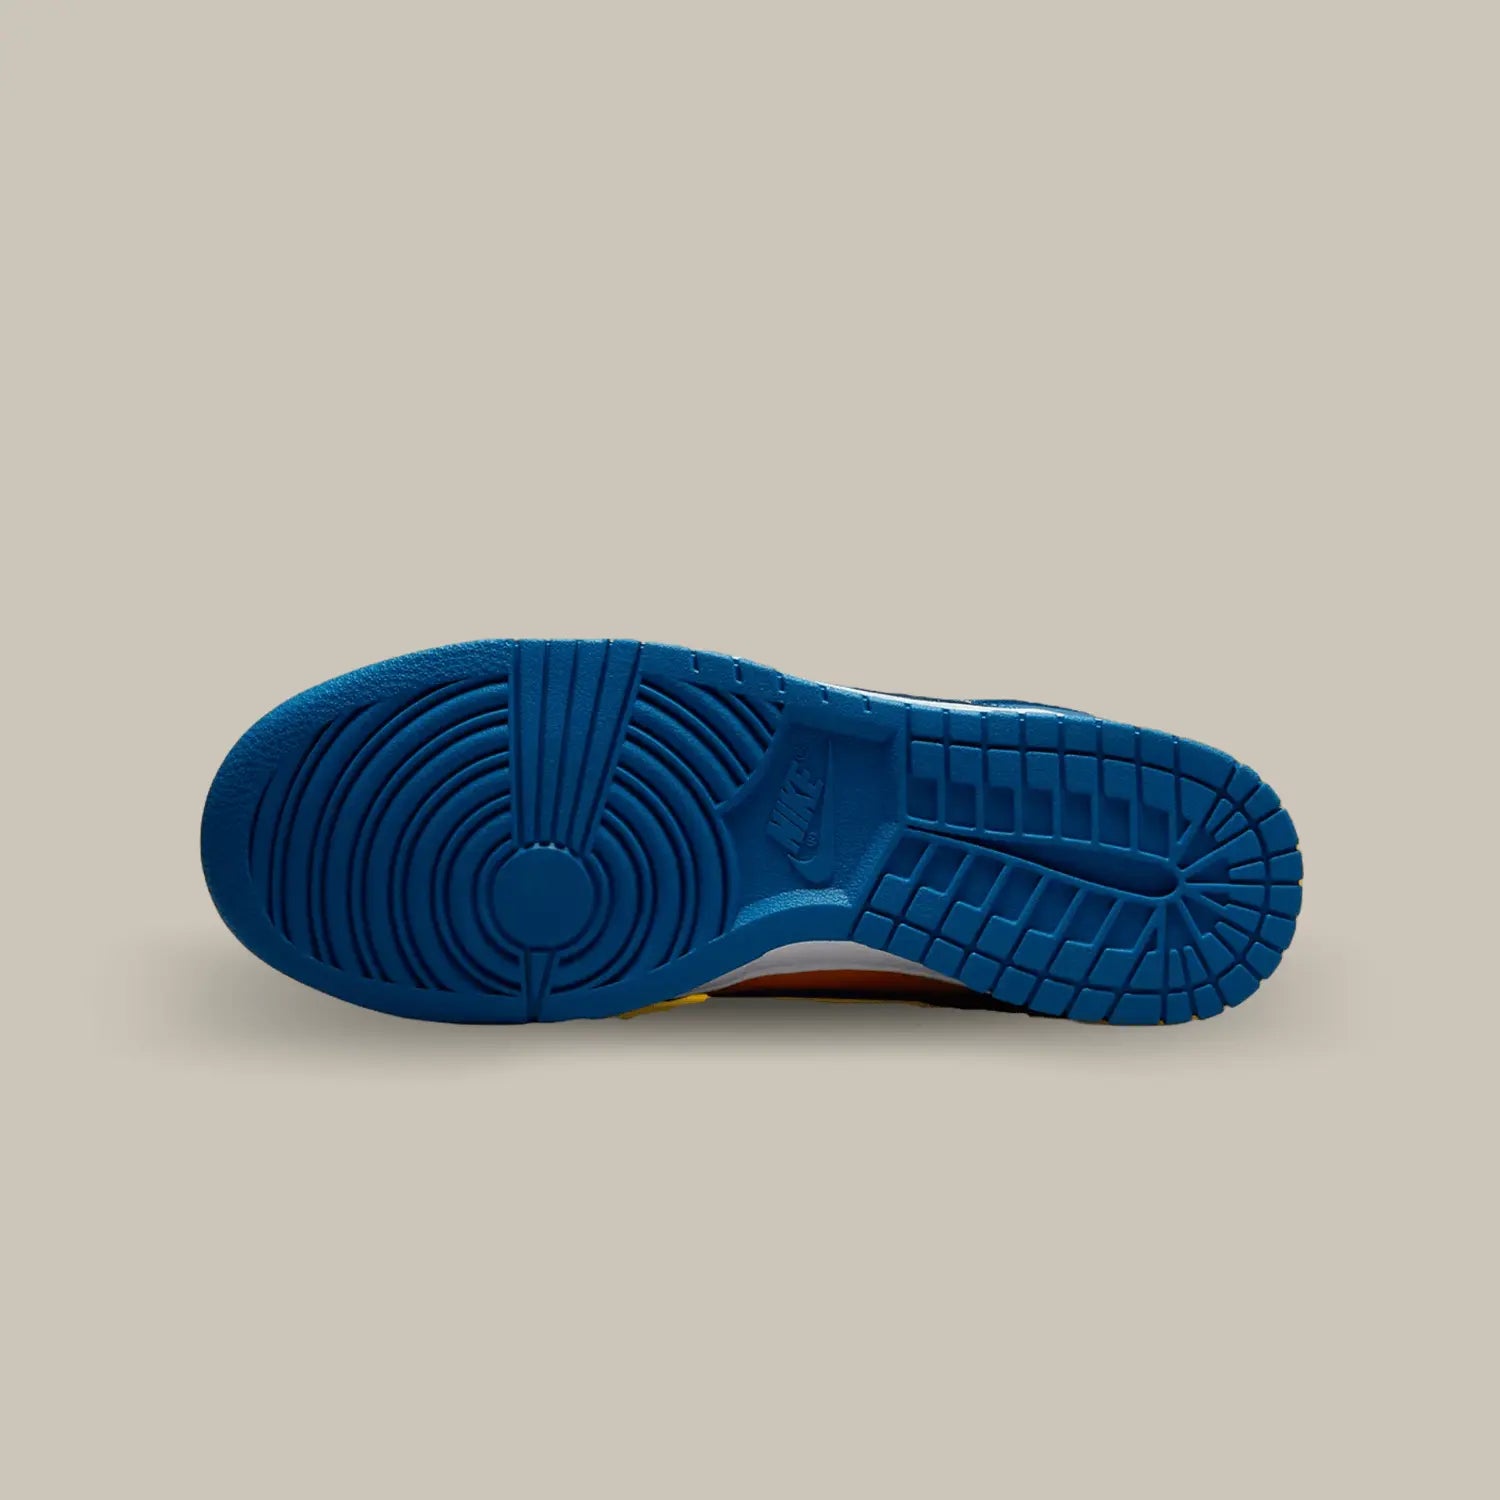 La semelle de la Nike Dunk Low UCLA de couleur bleu.